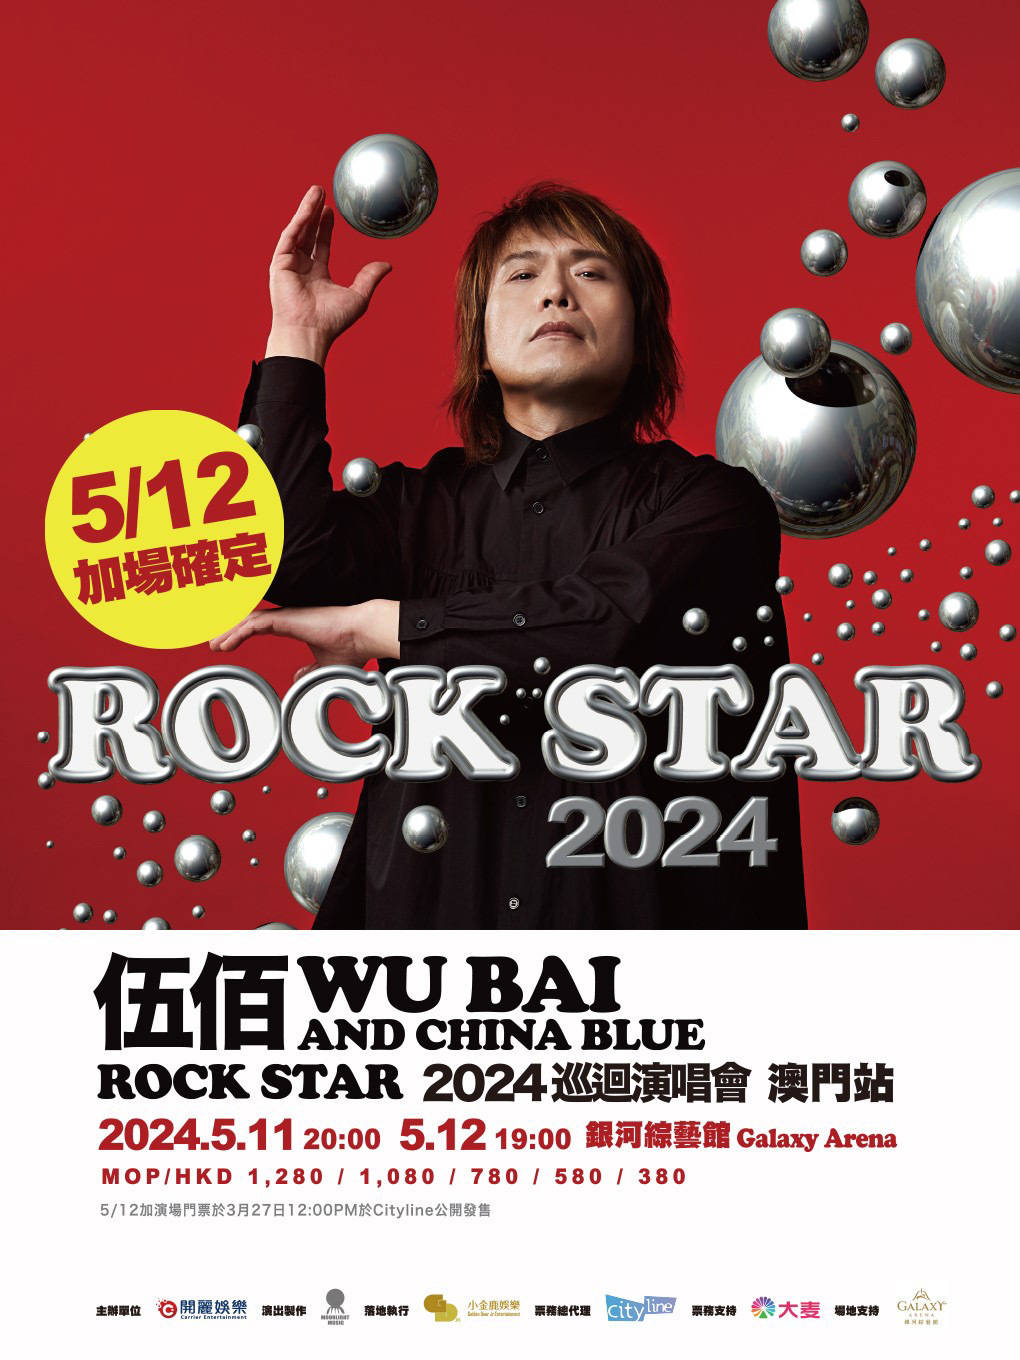 2024年,伍佰&china blue巡演再次启程,重新开启大众对摇滚乐的视野与